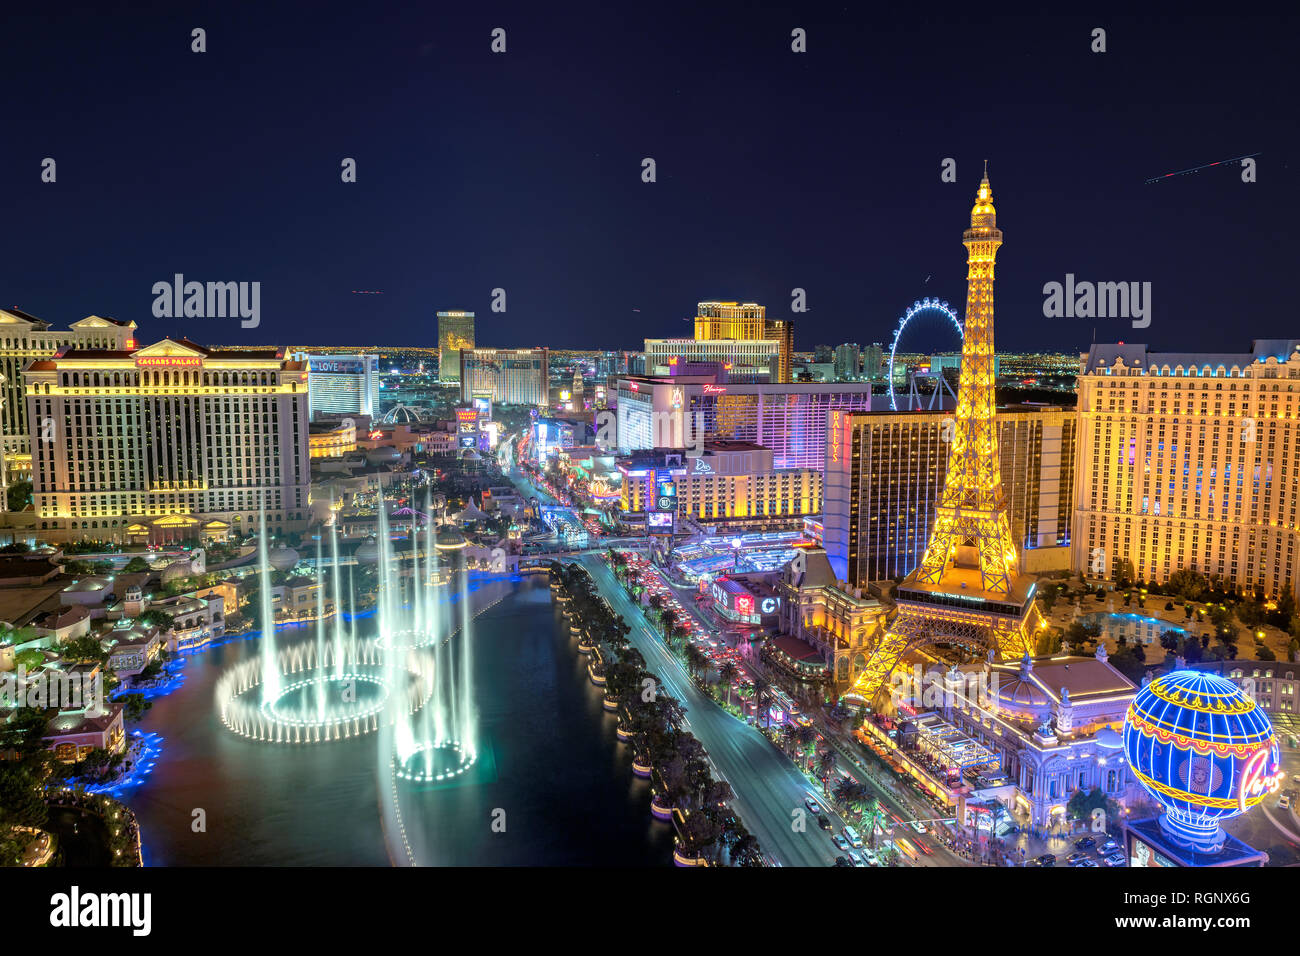 Las Vegas strip skyline as seen at night Stock Photo